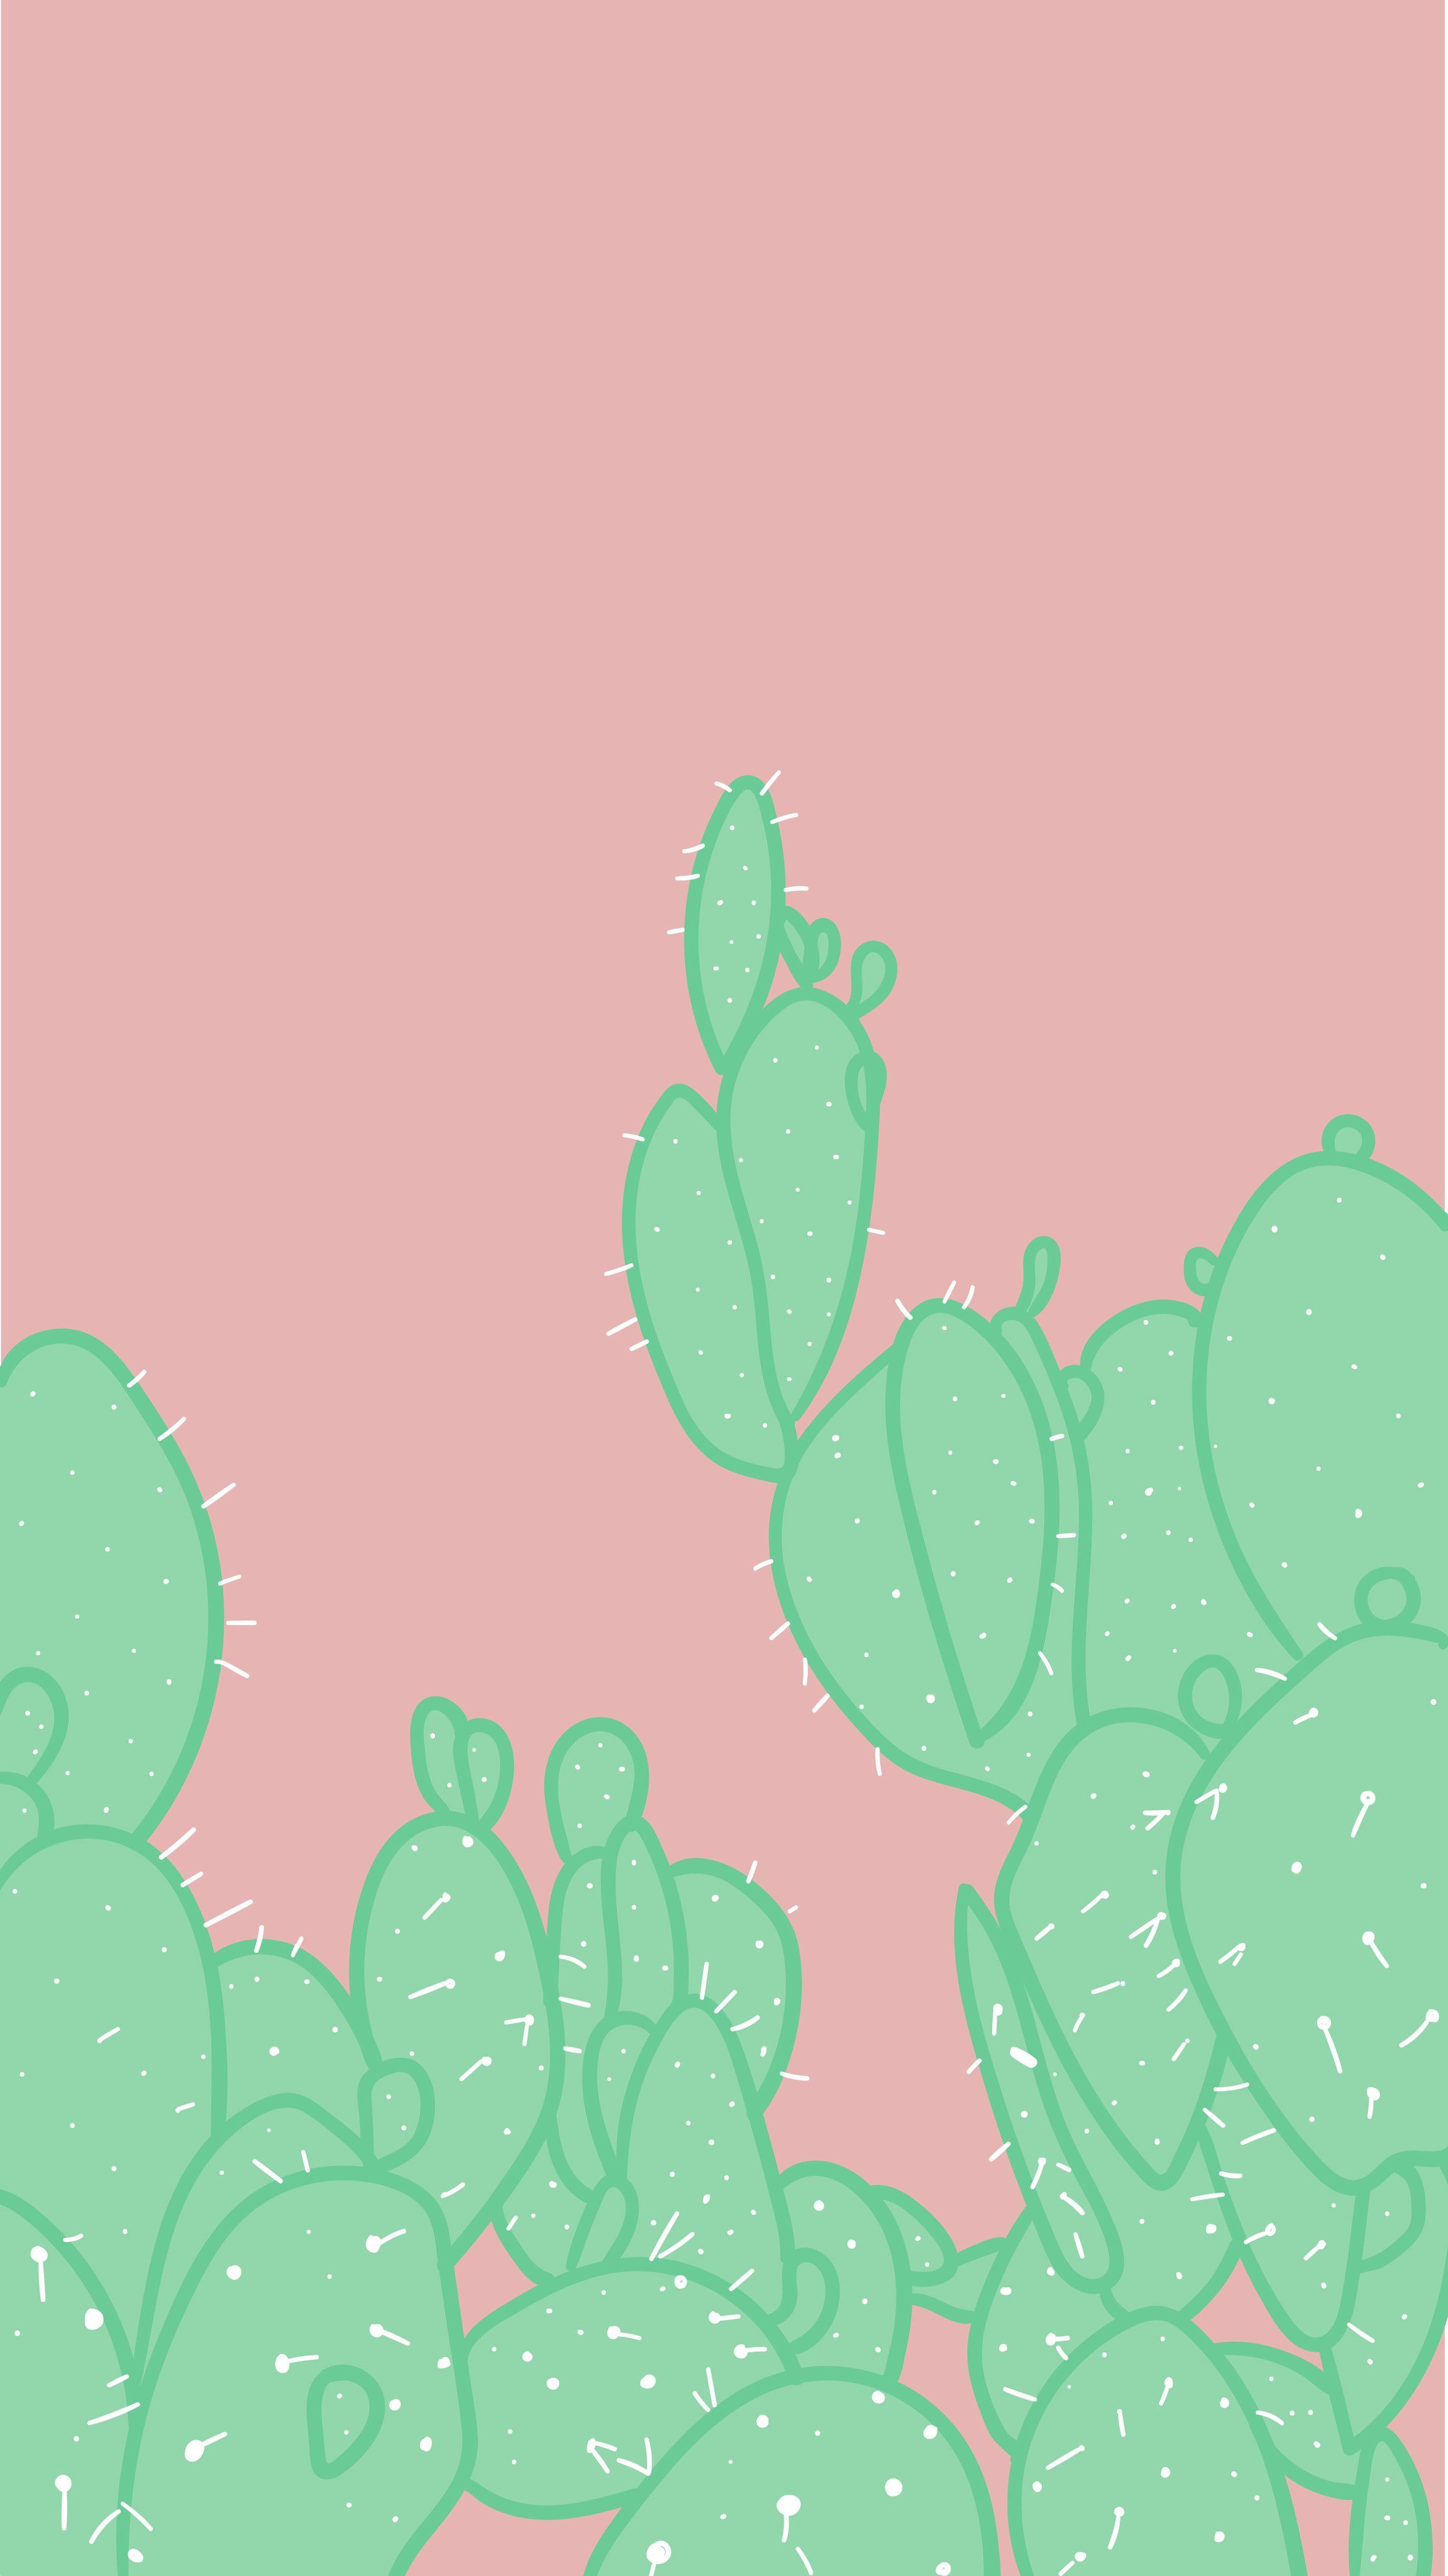 arvowear #arvo #phonebackground #wallpaper #background #cactus #green #pink #prickly. Cactus background, Good phone background, Paper background texture